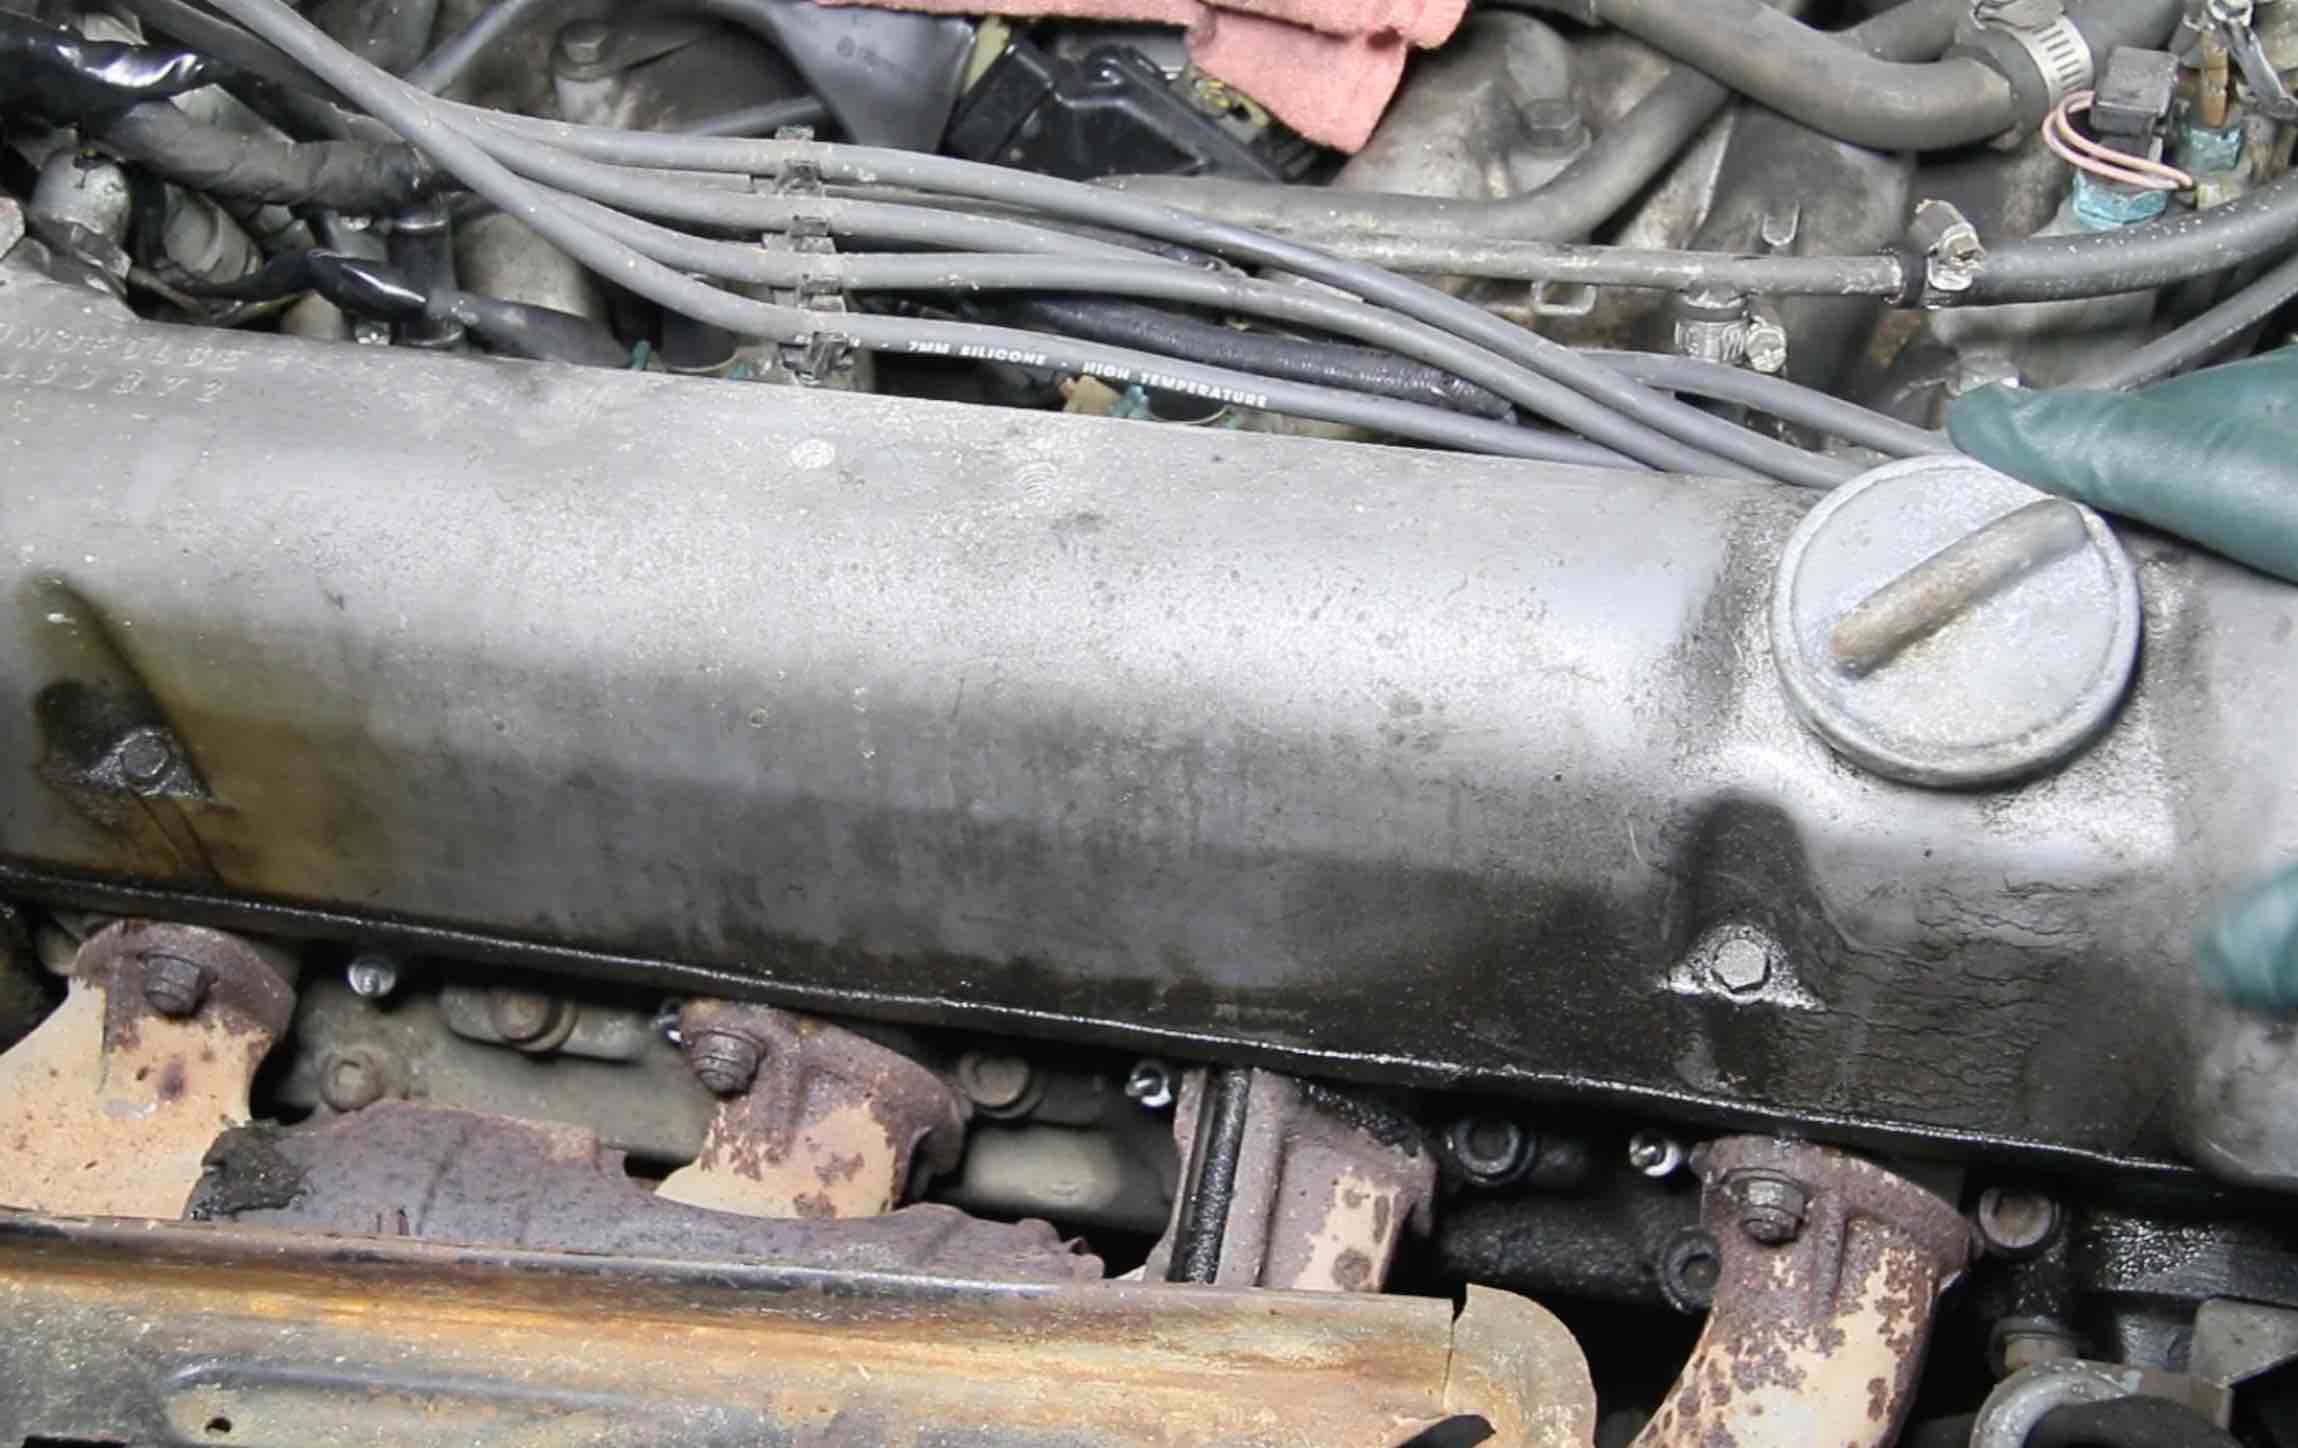 engine valve cover gasket leak